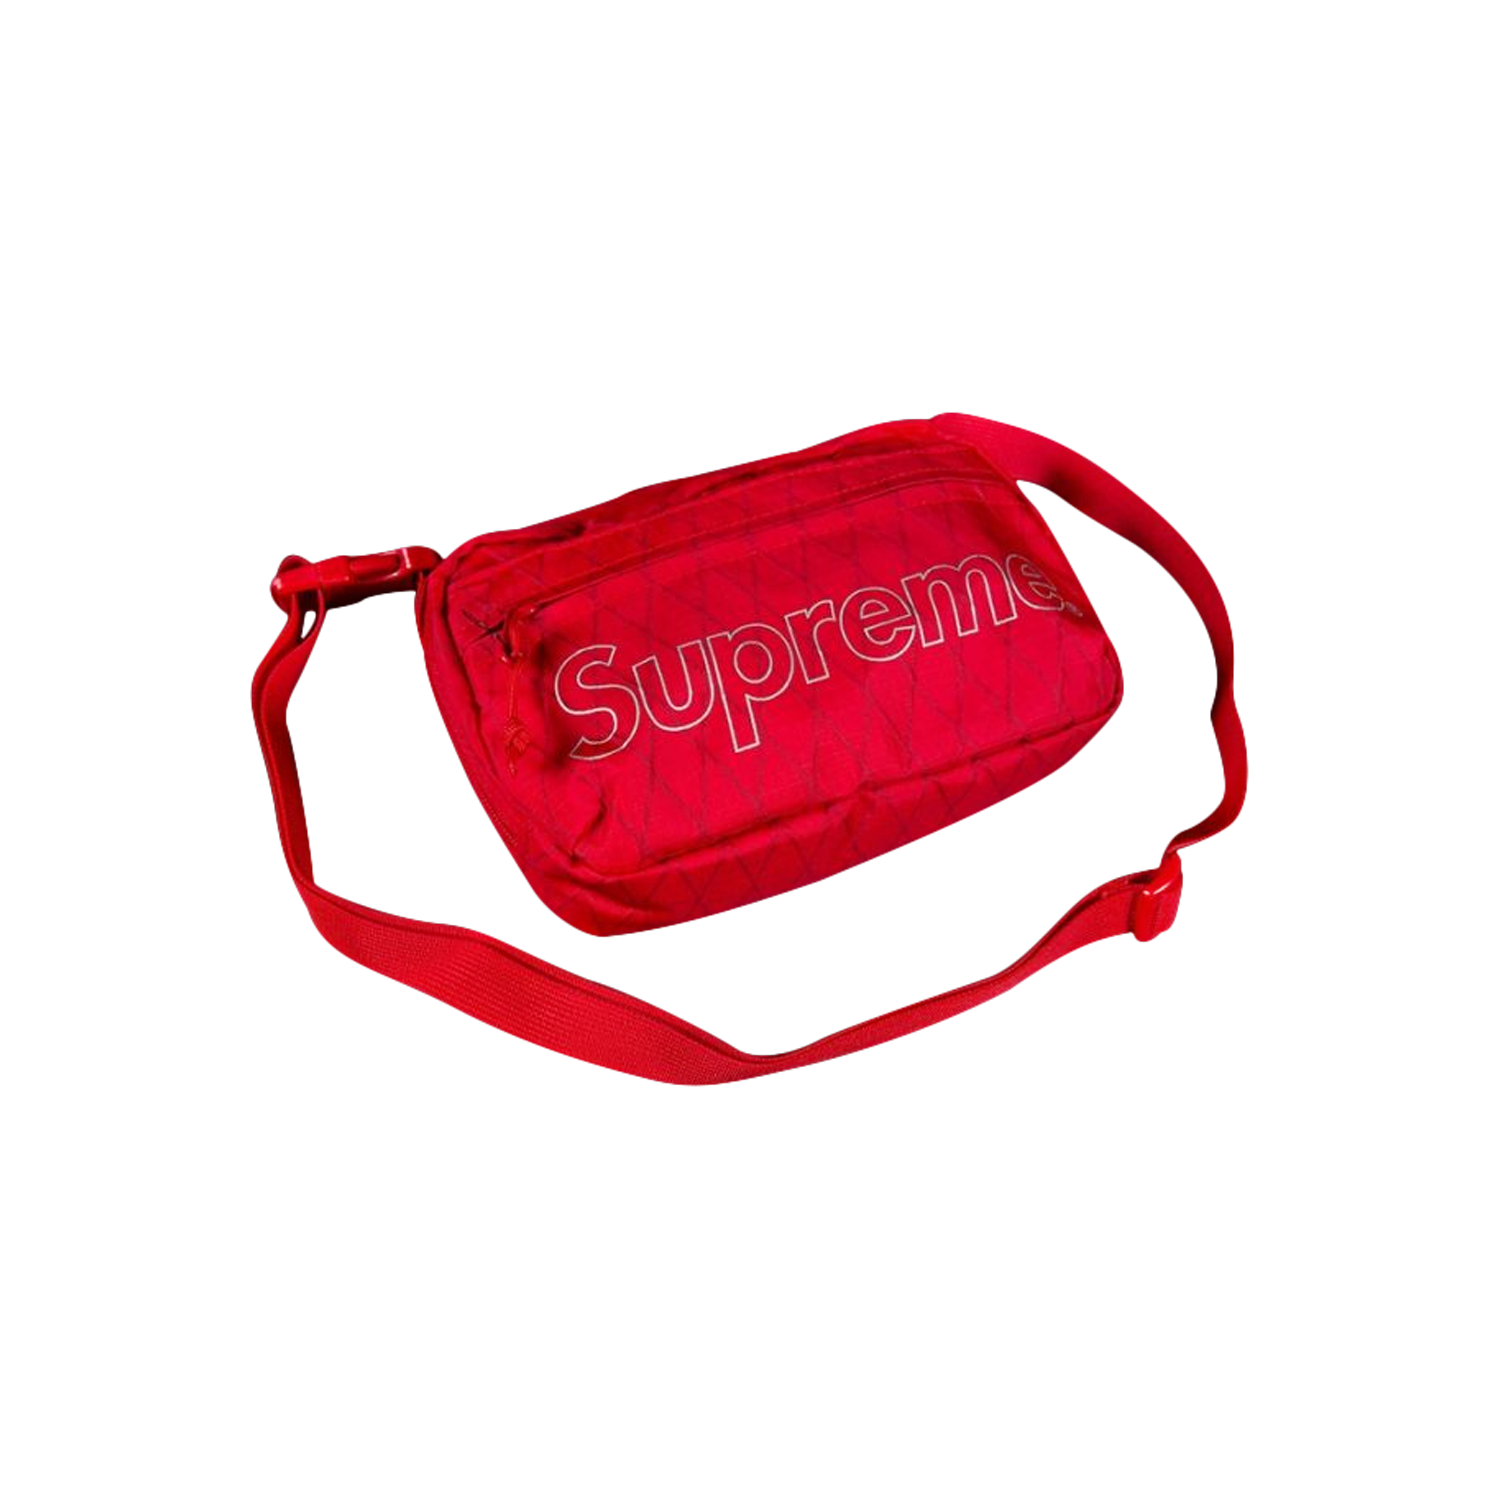 Supreme Shoulder Bag 'Red'